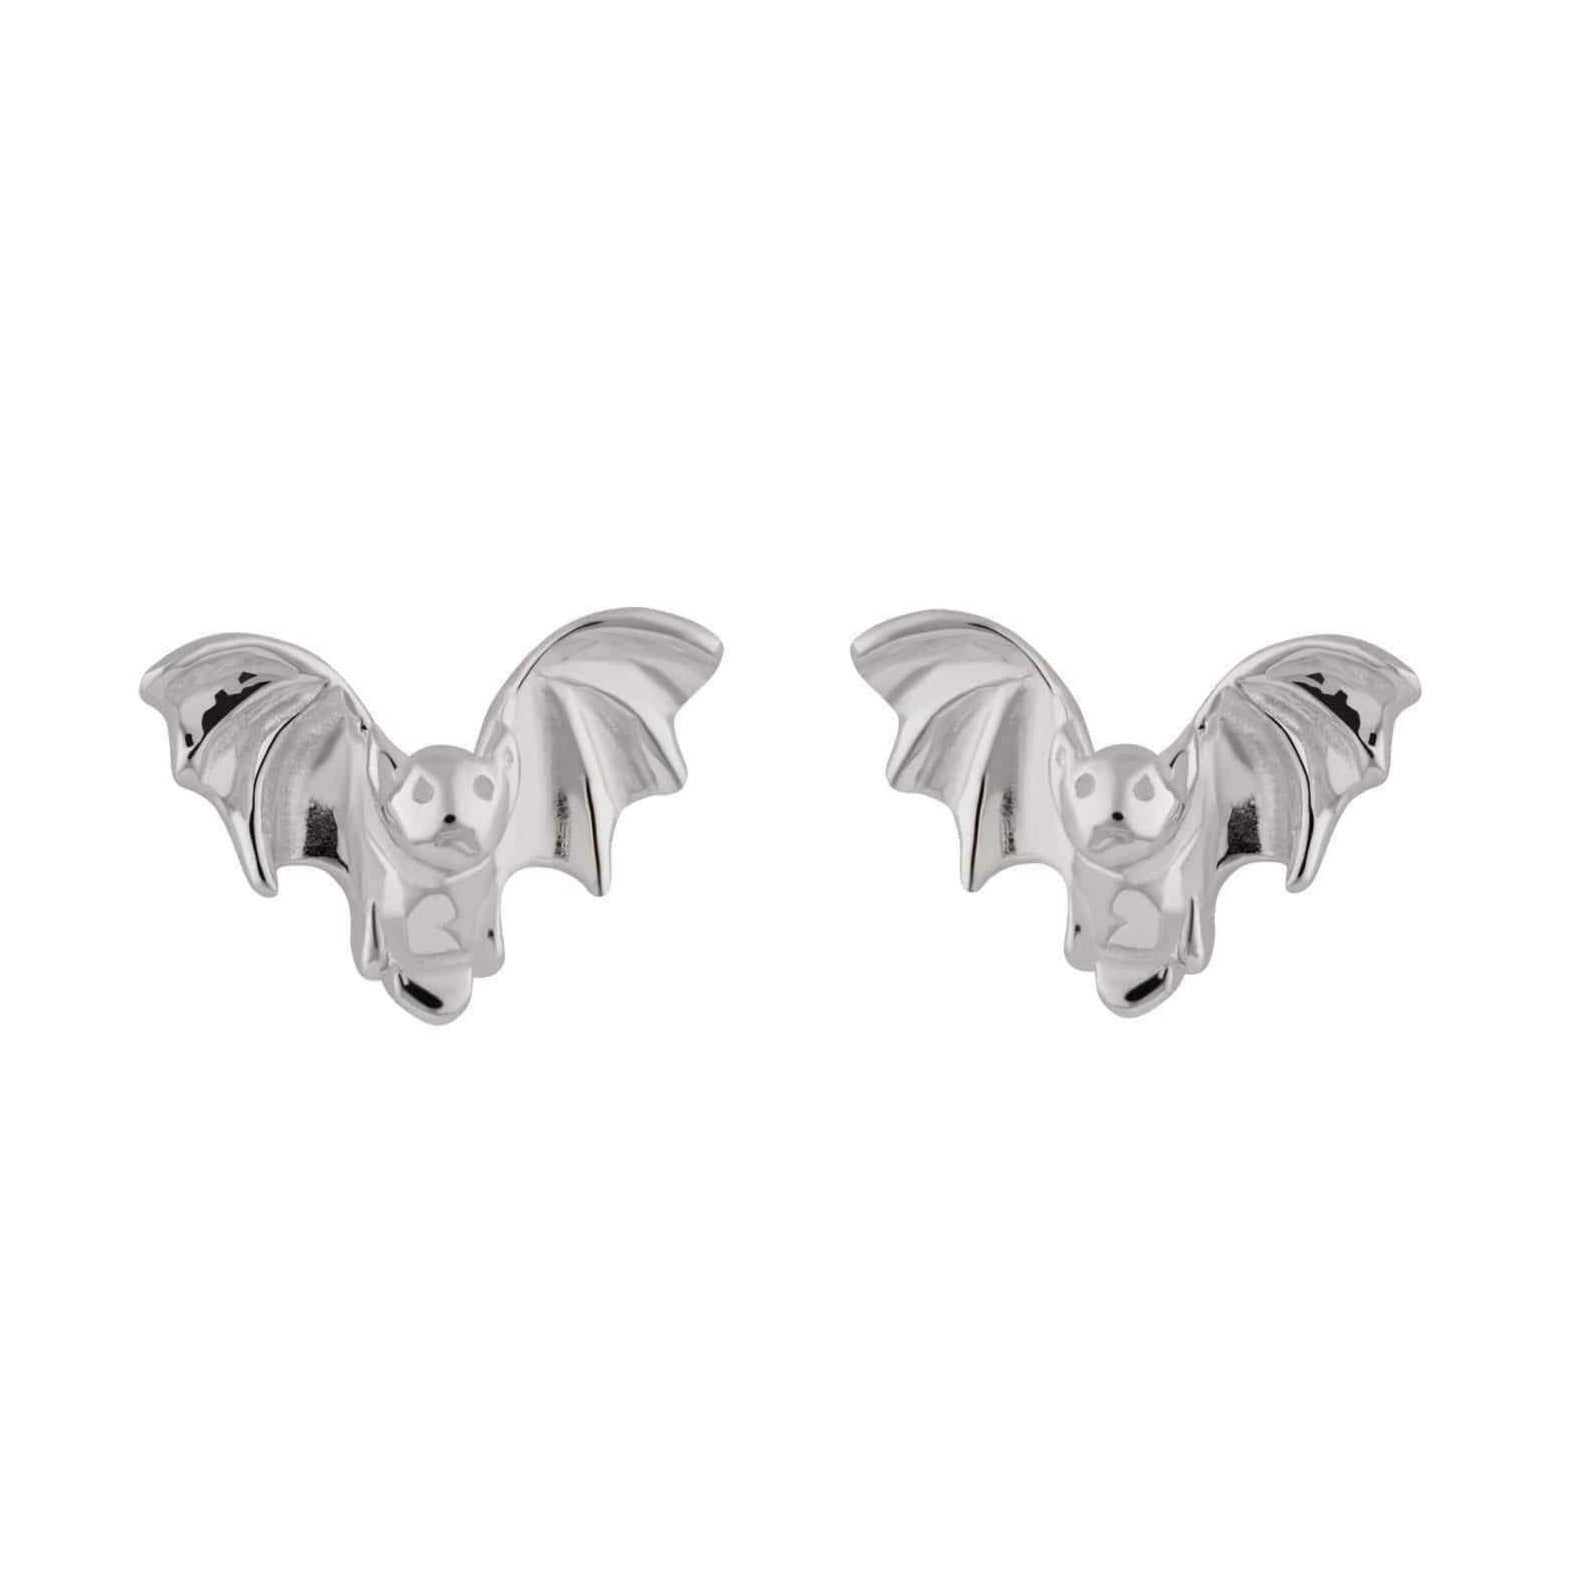  Silver Bat Stud Earrings - by Scream Pretty